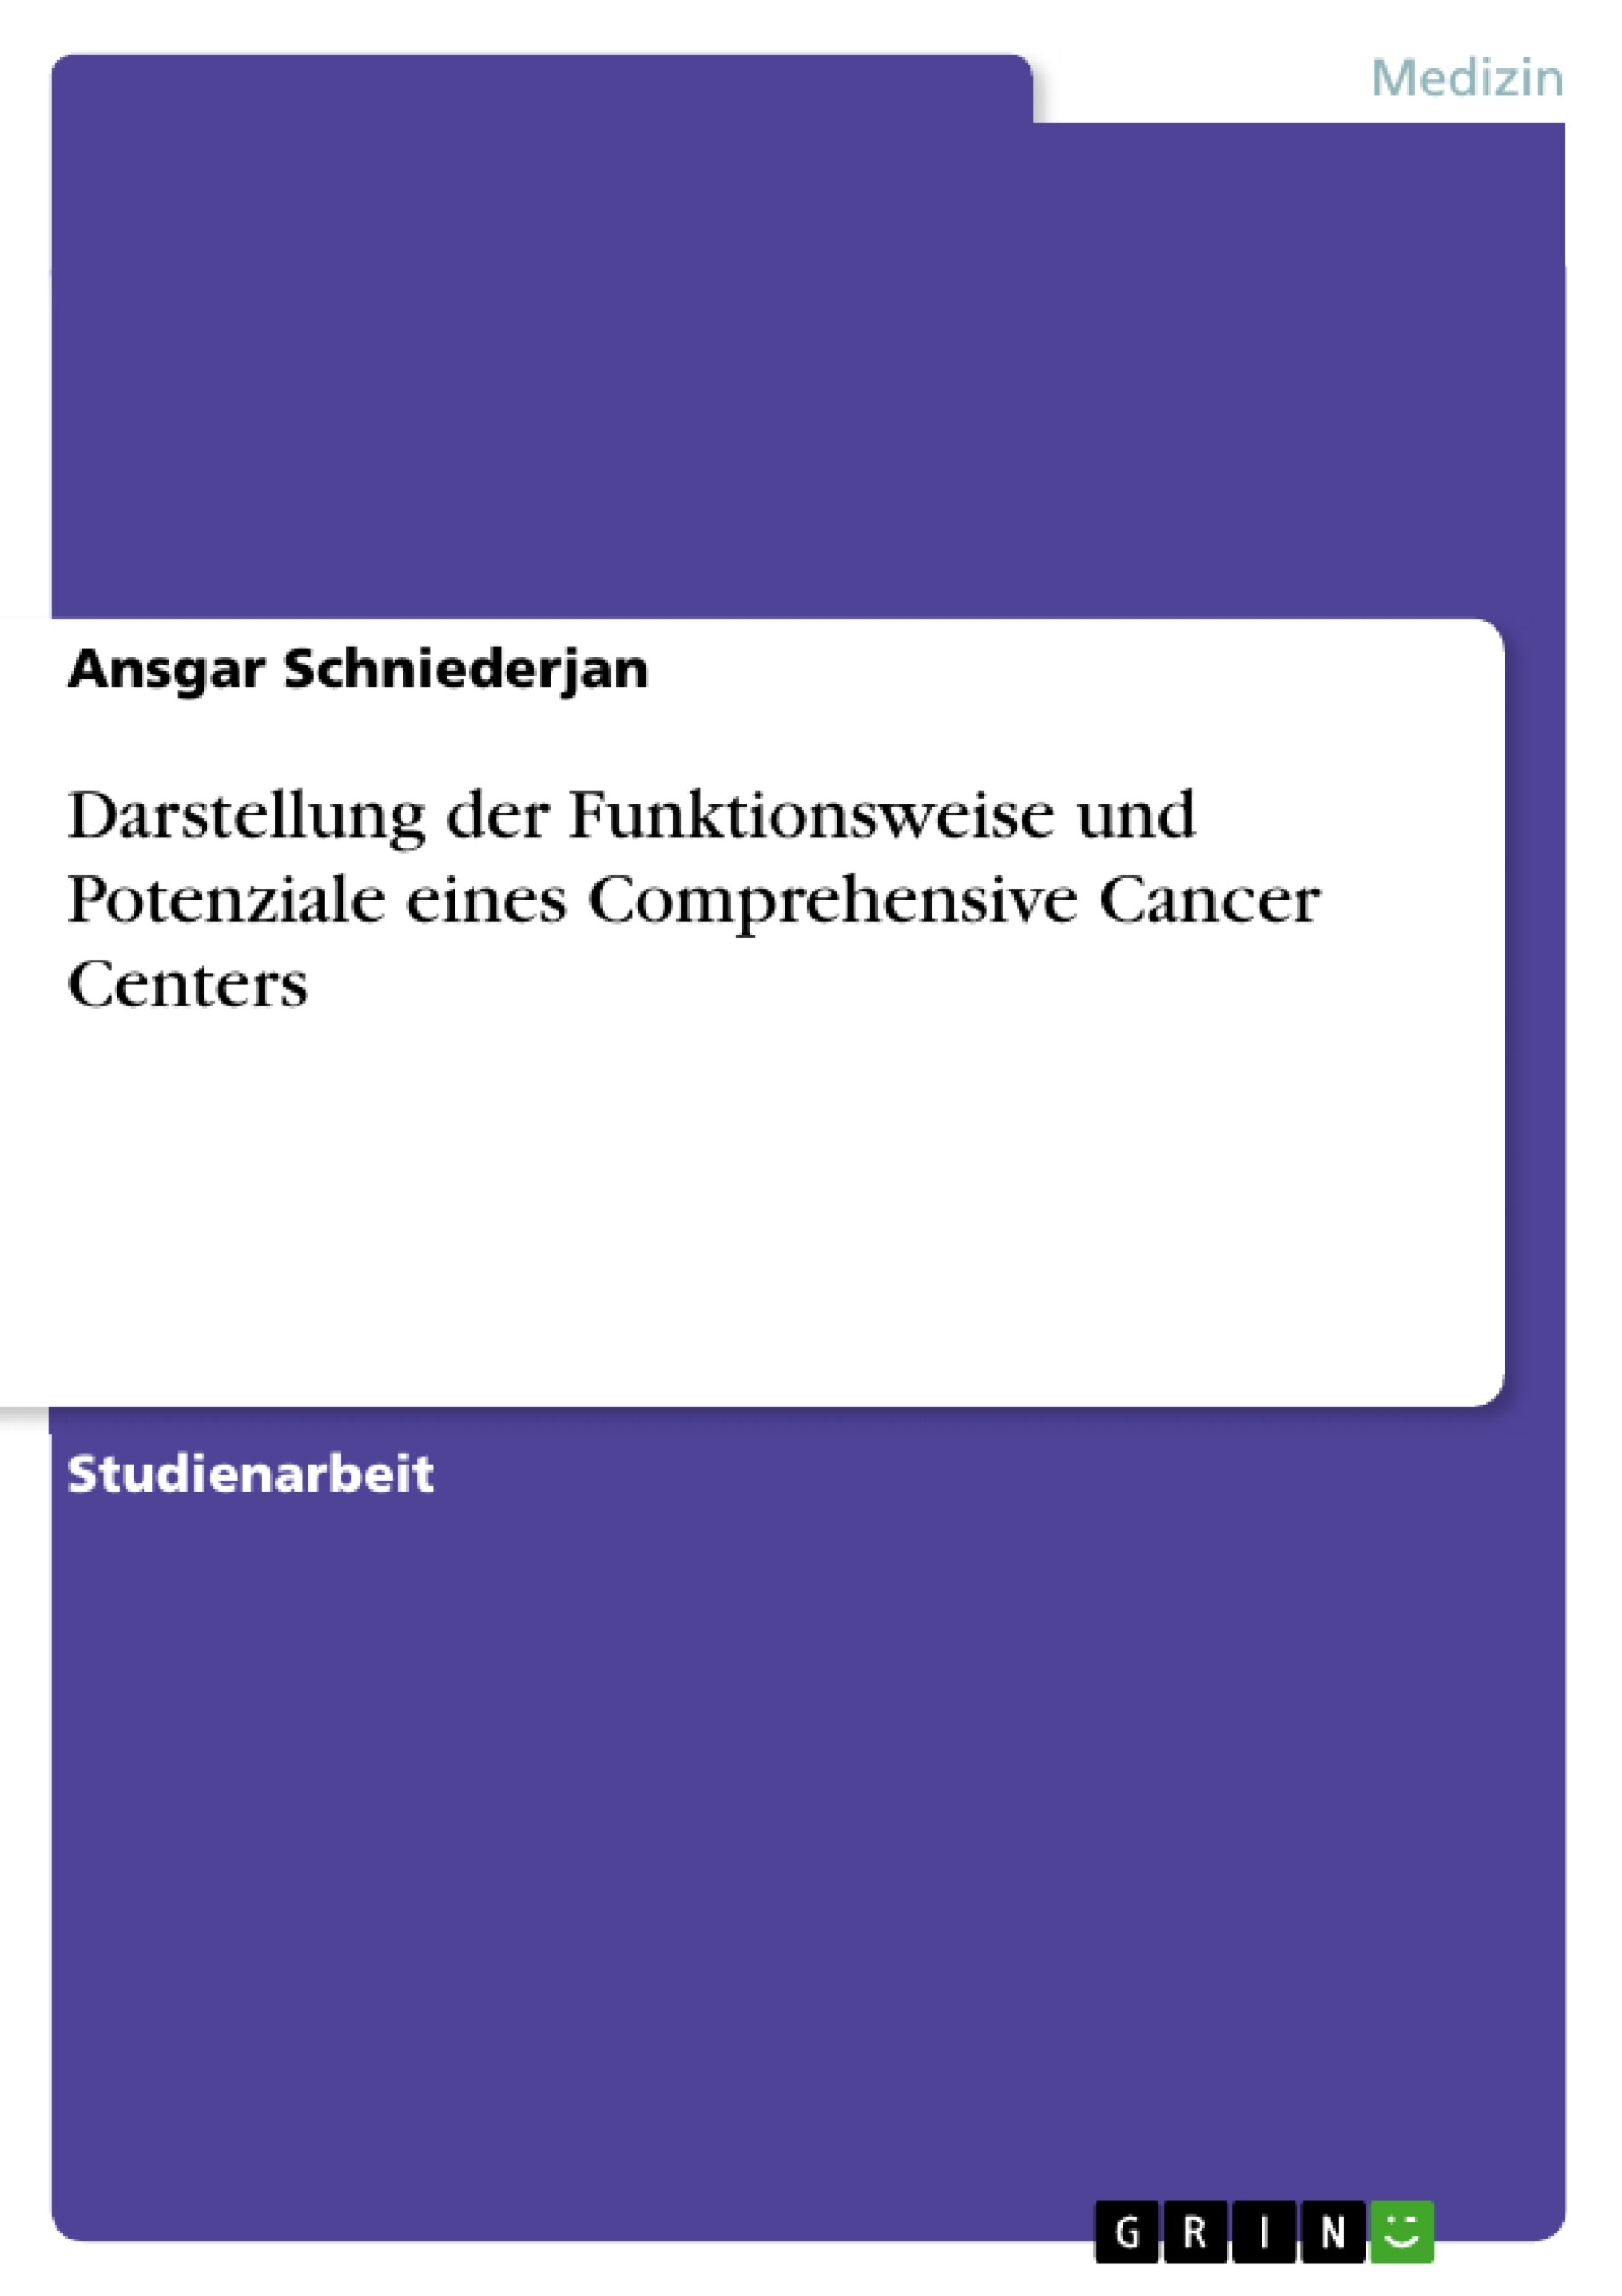 Darstellung der Funktionsweise und Potenziale eines Comprehensive Cancer Centers